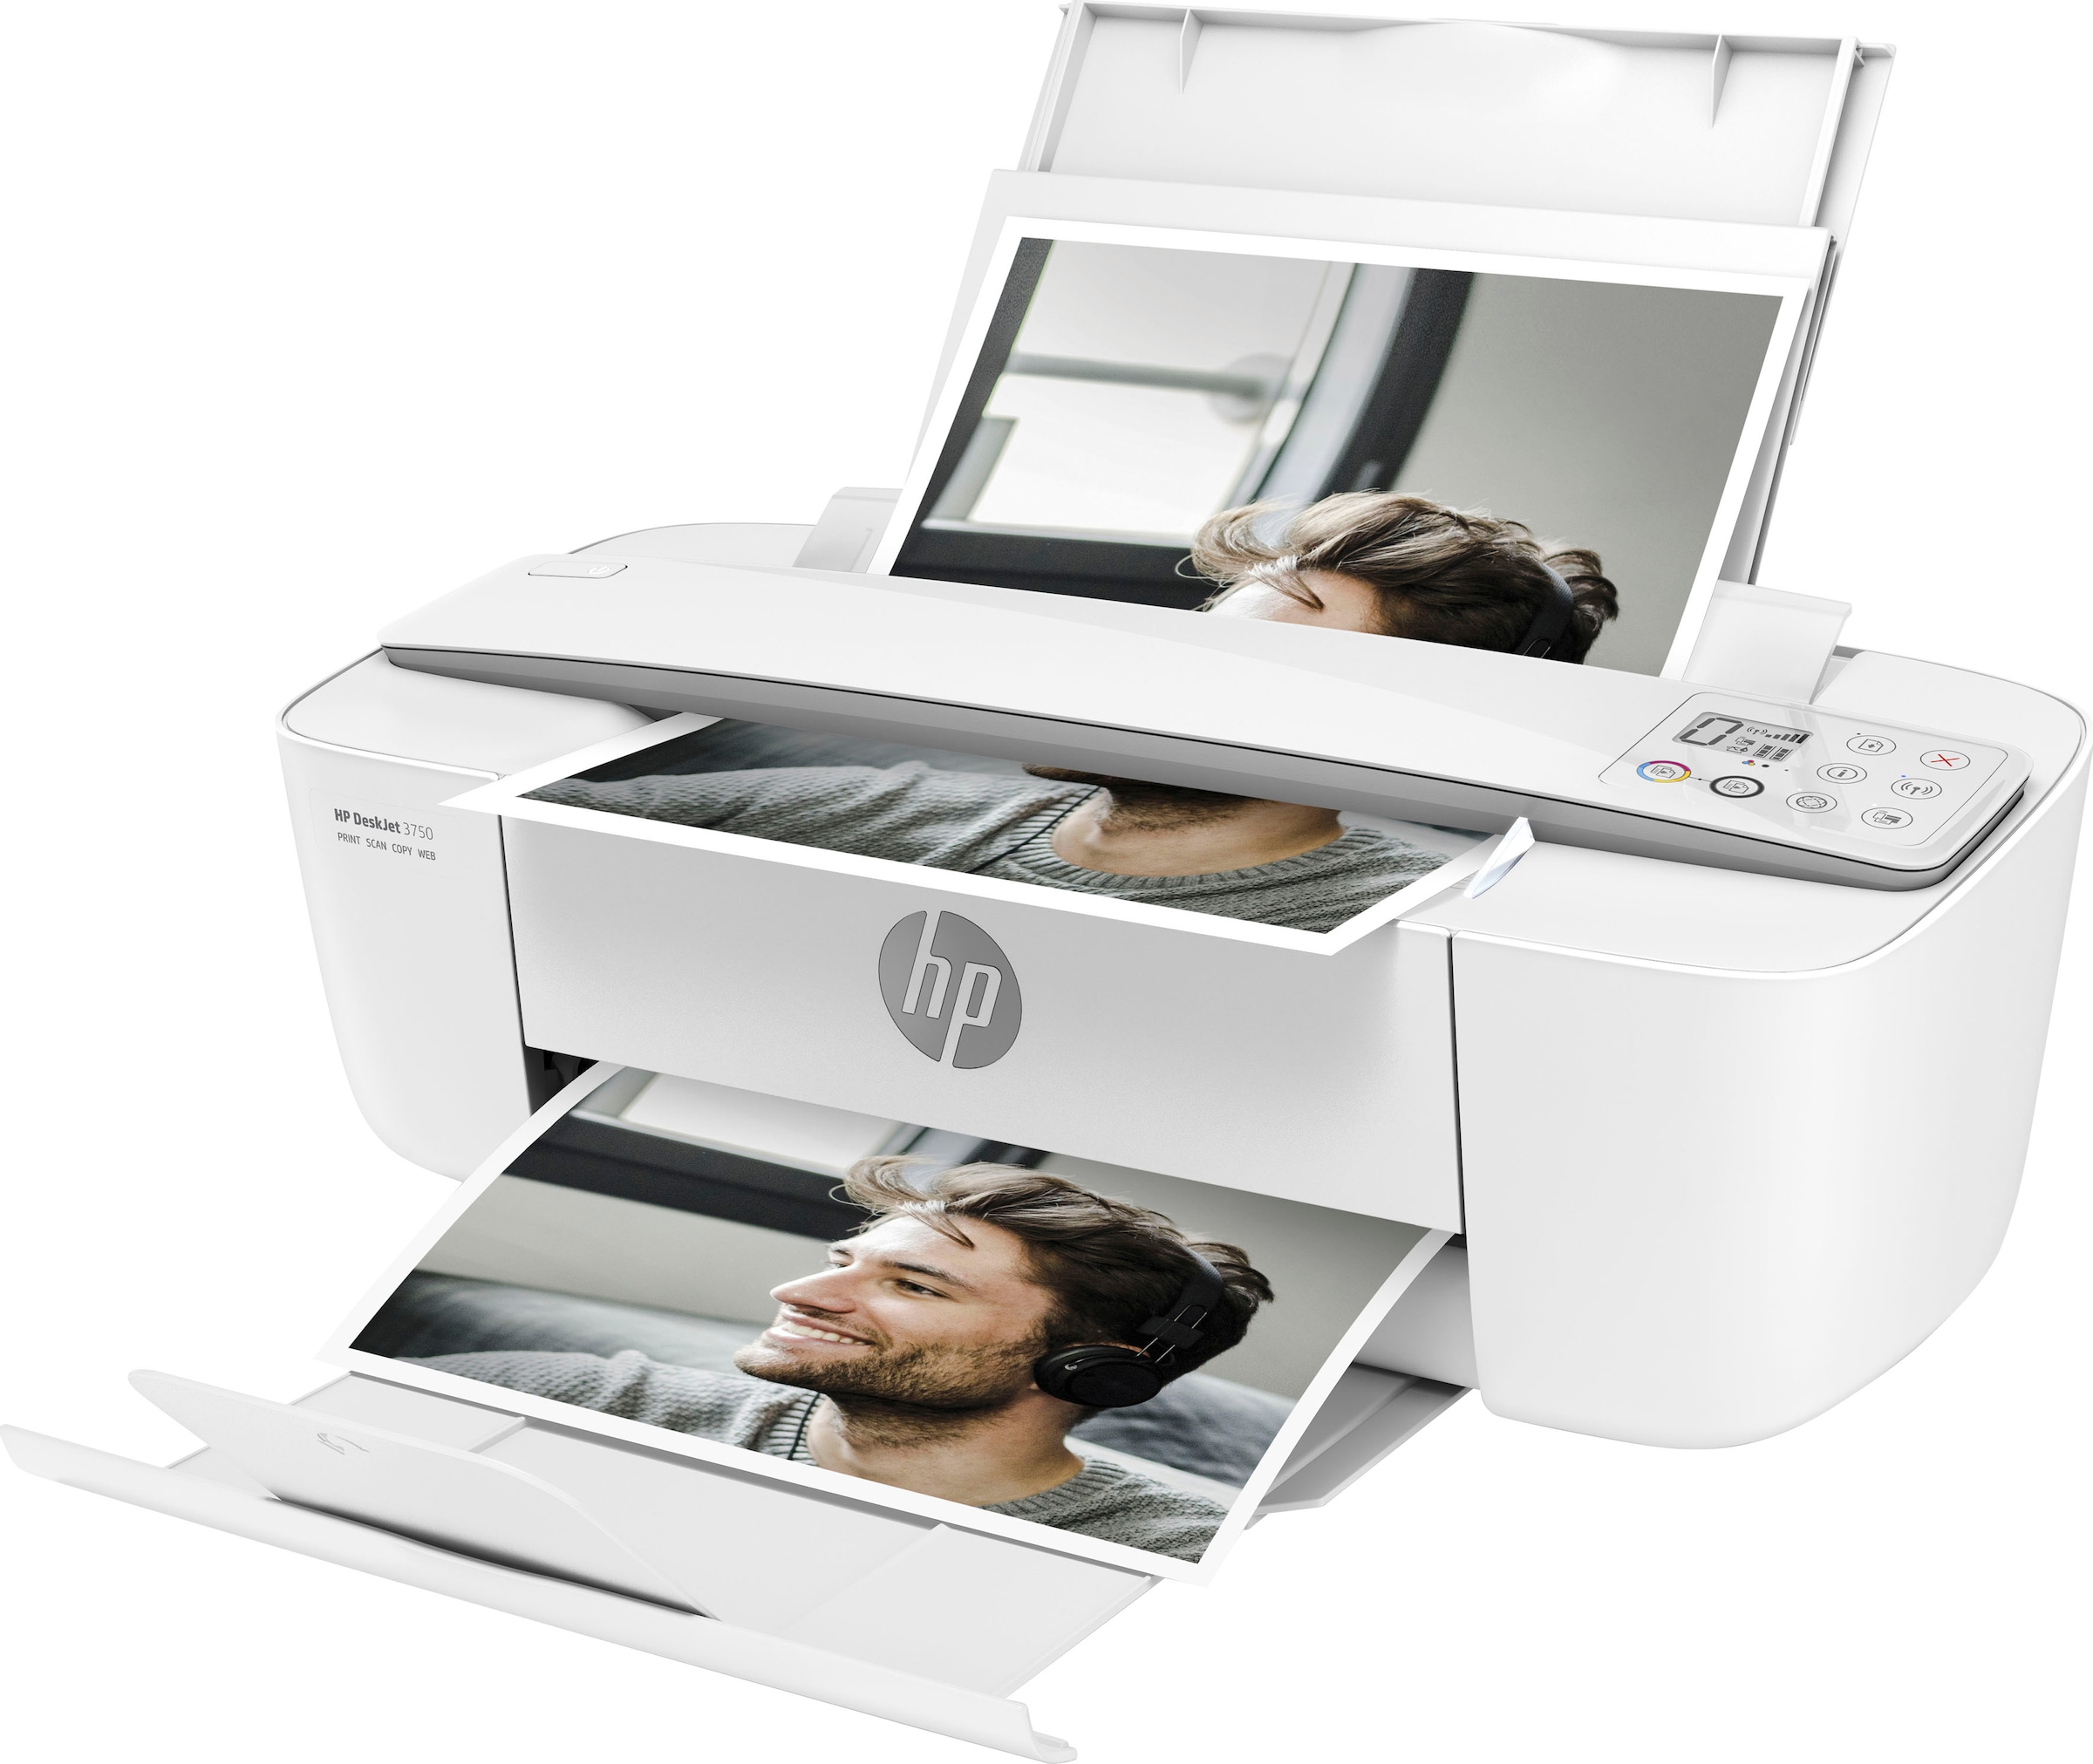 HP Multifunktionsdrucker »Drucker DeskJet 3750«